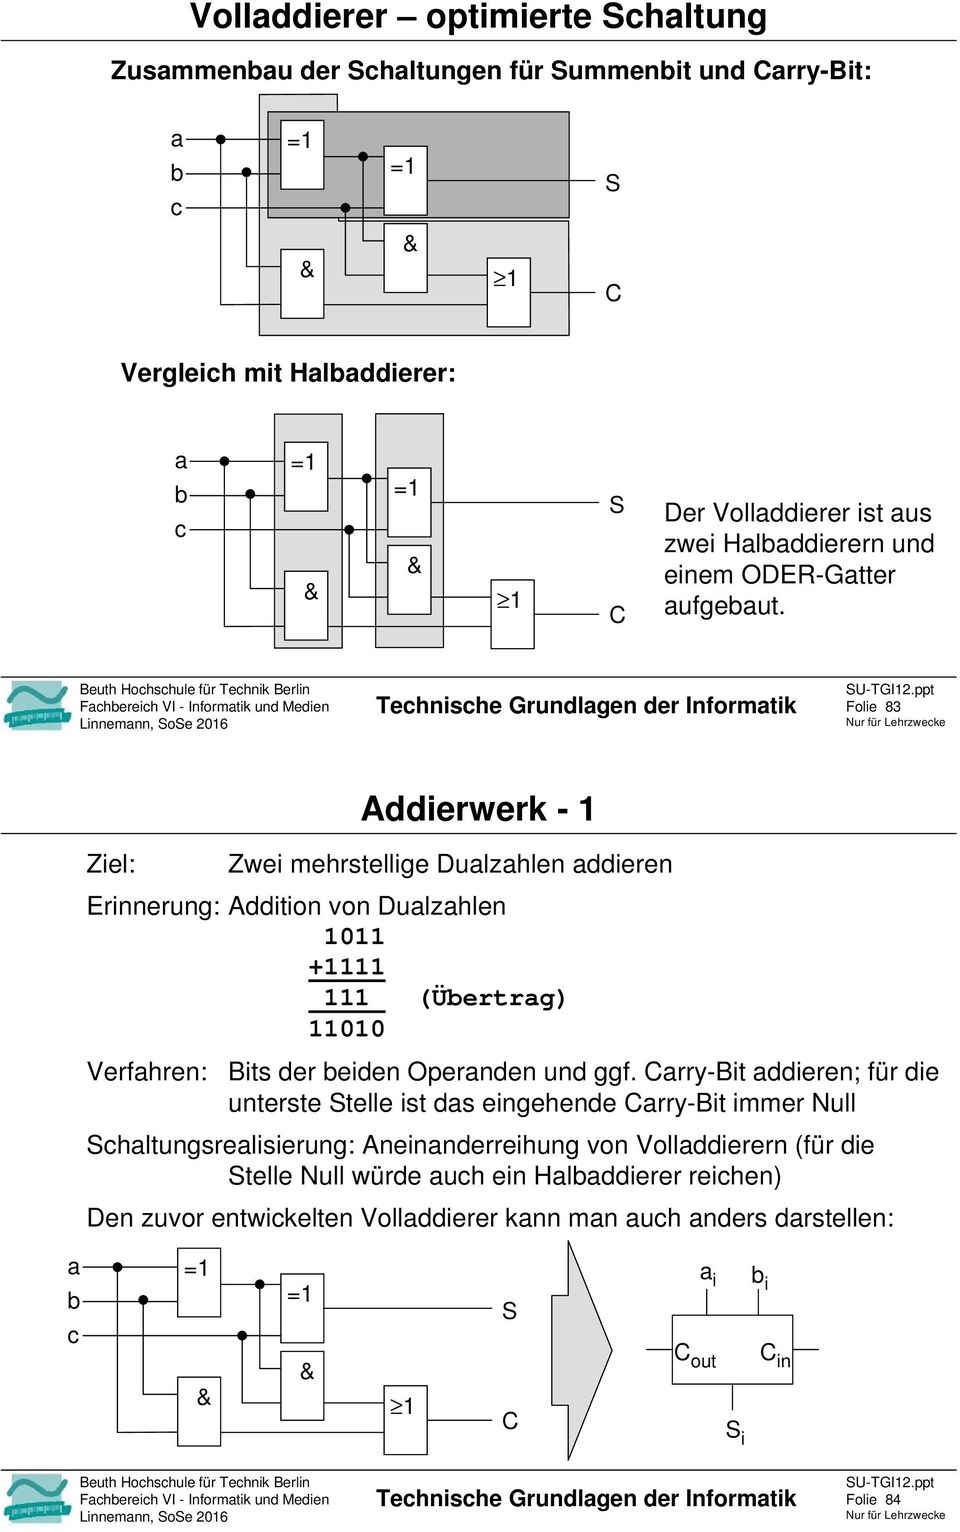 ppt Folie 83 Addierwerk - Ziel: Zwei mehrstellige Dulzhlen ddieren Erinnerung: Addition von Dulzhlen + (Üertrg) Verfhren: Bits der eiden Opernden und ggf.